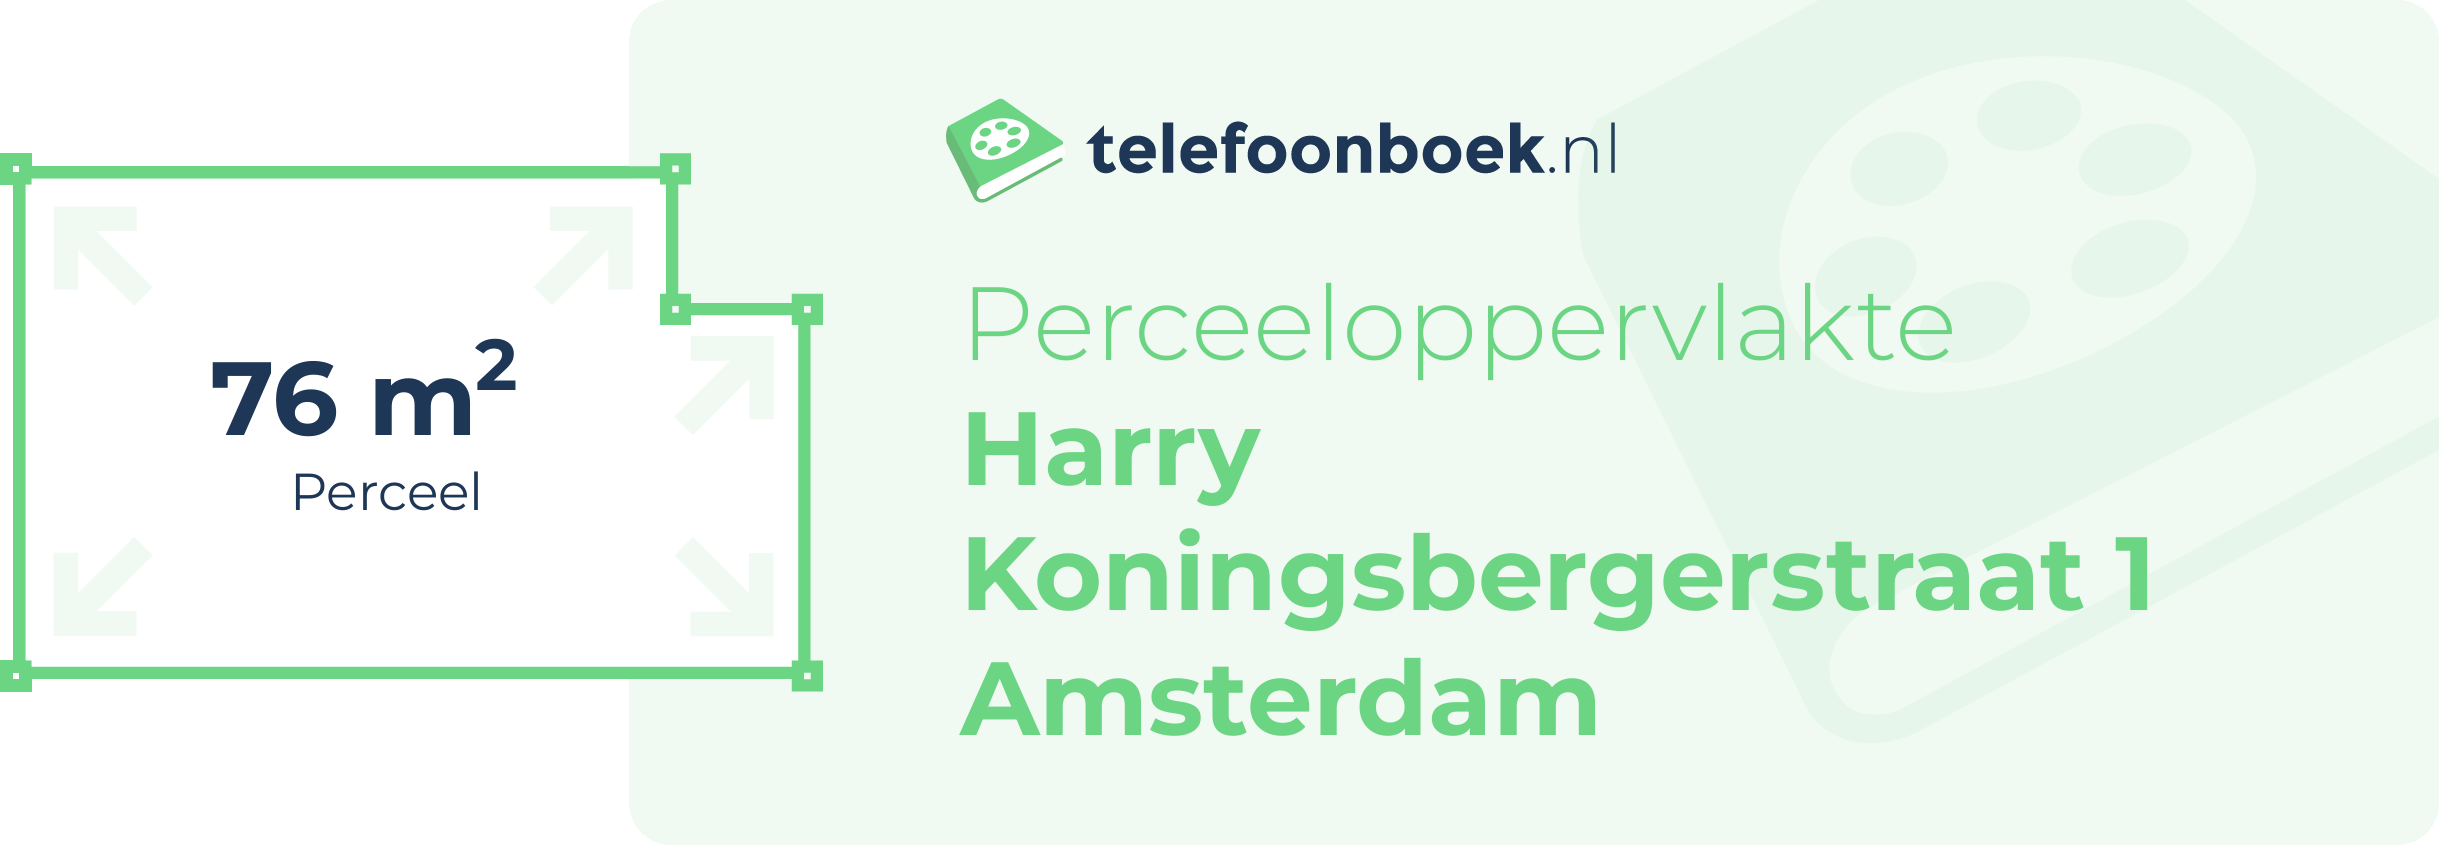 Perceeloppervlakte Harry Koningsbergerstraat 1 Amsterdam